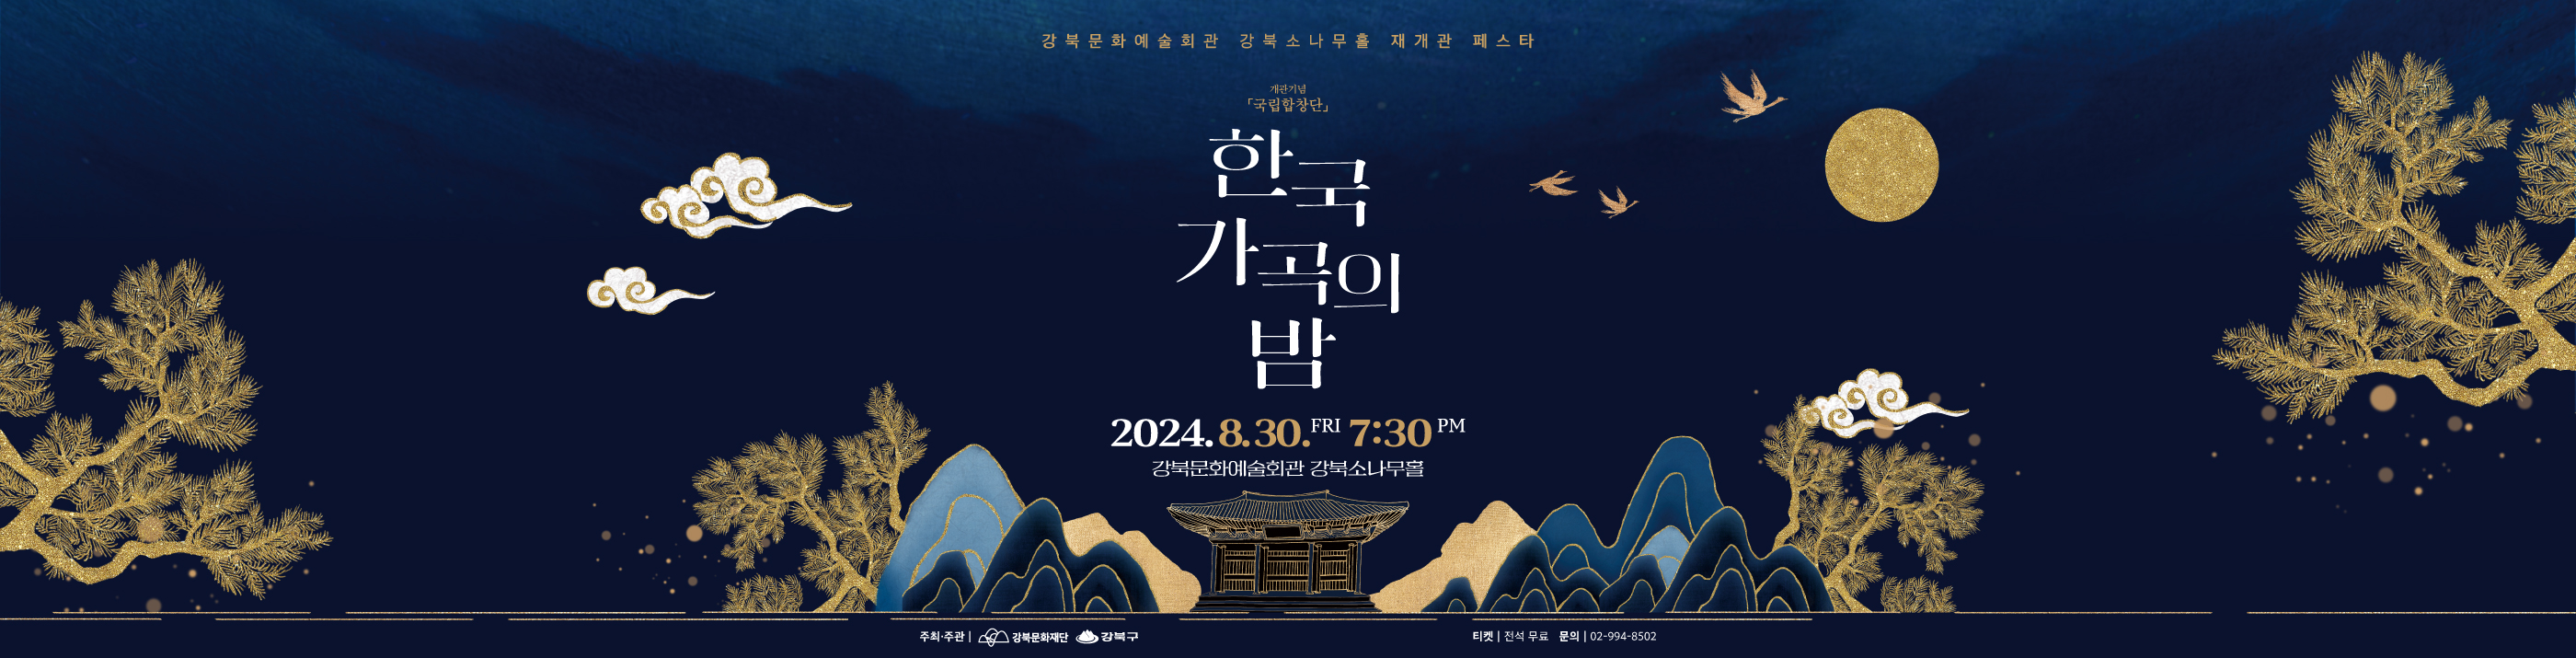 한국 가곡의 밤_PC용